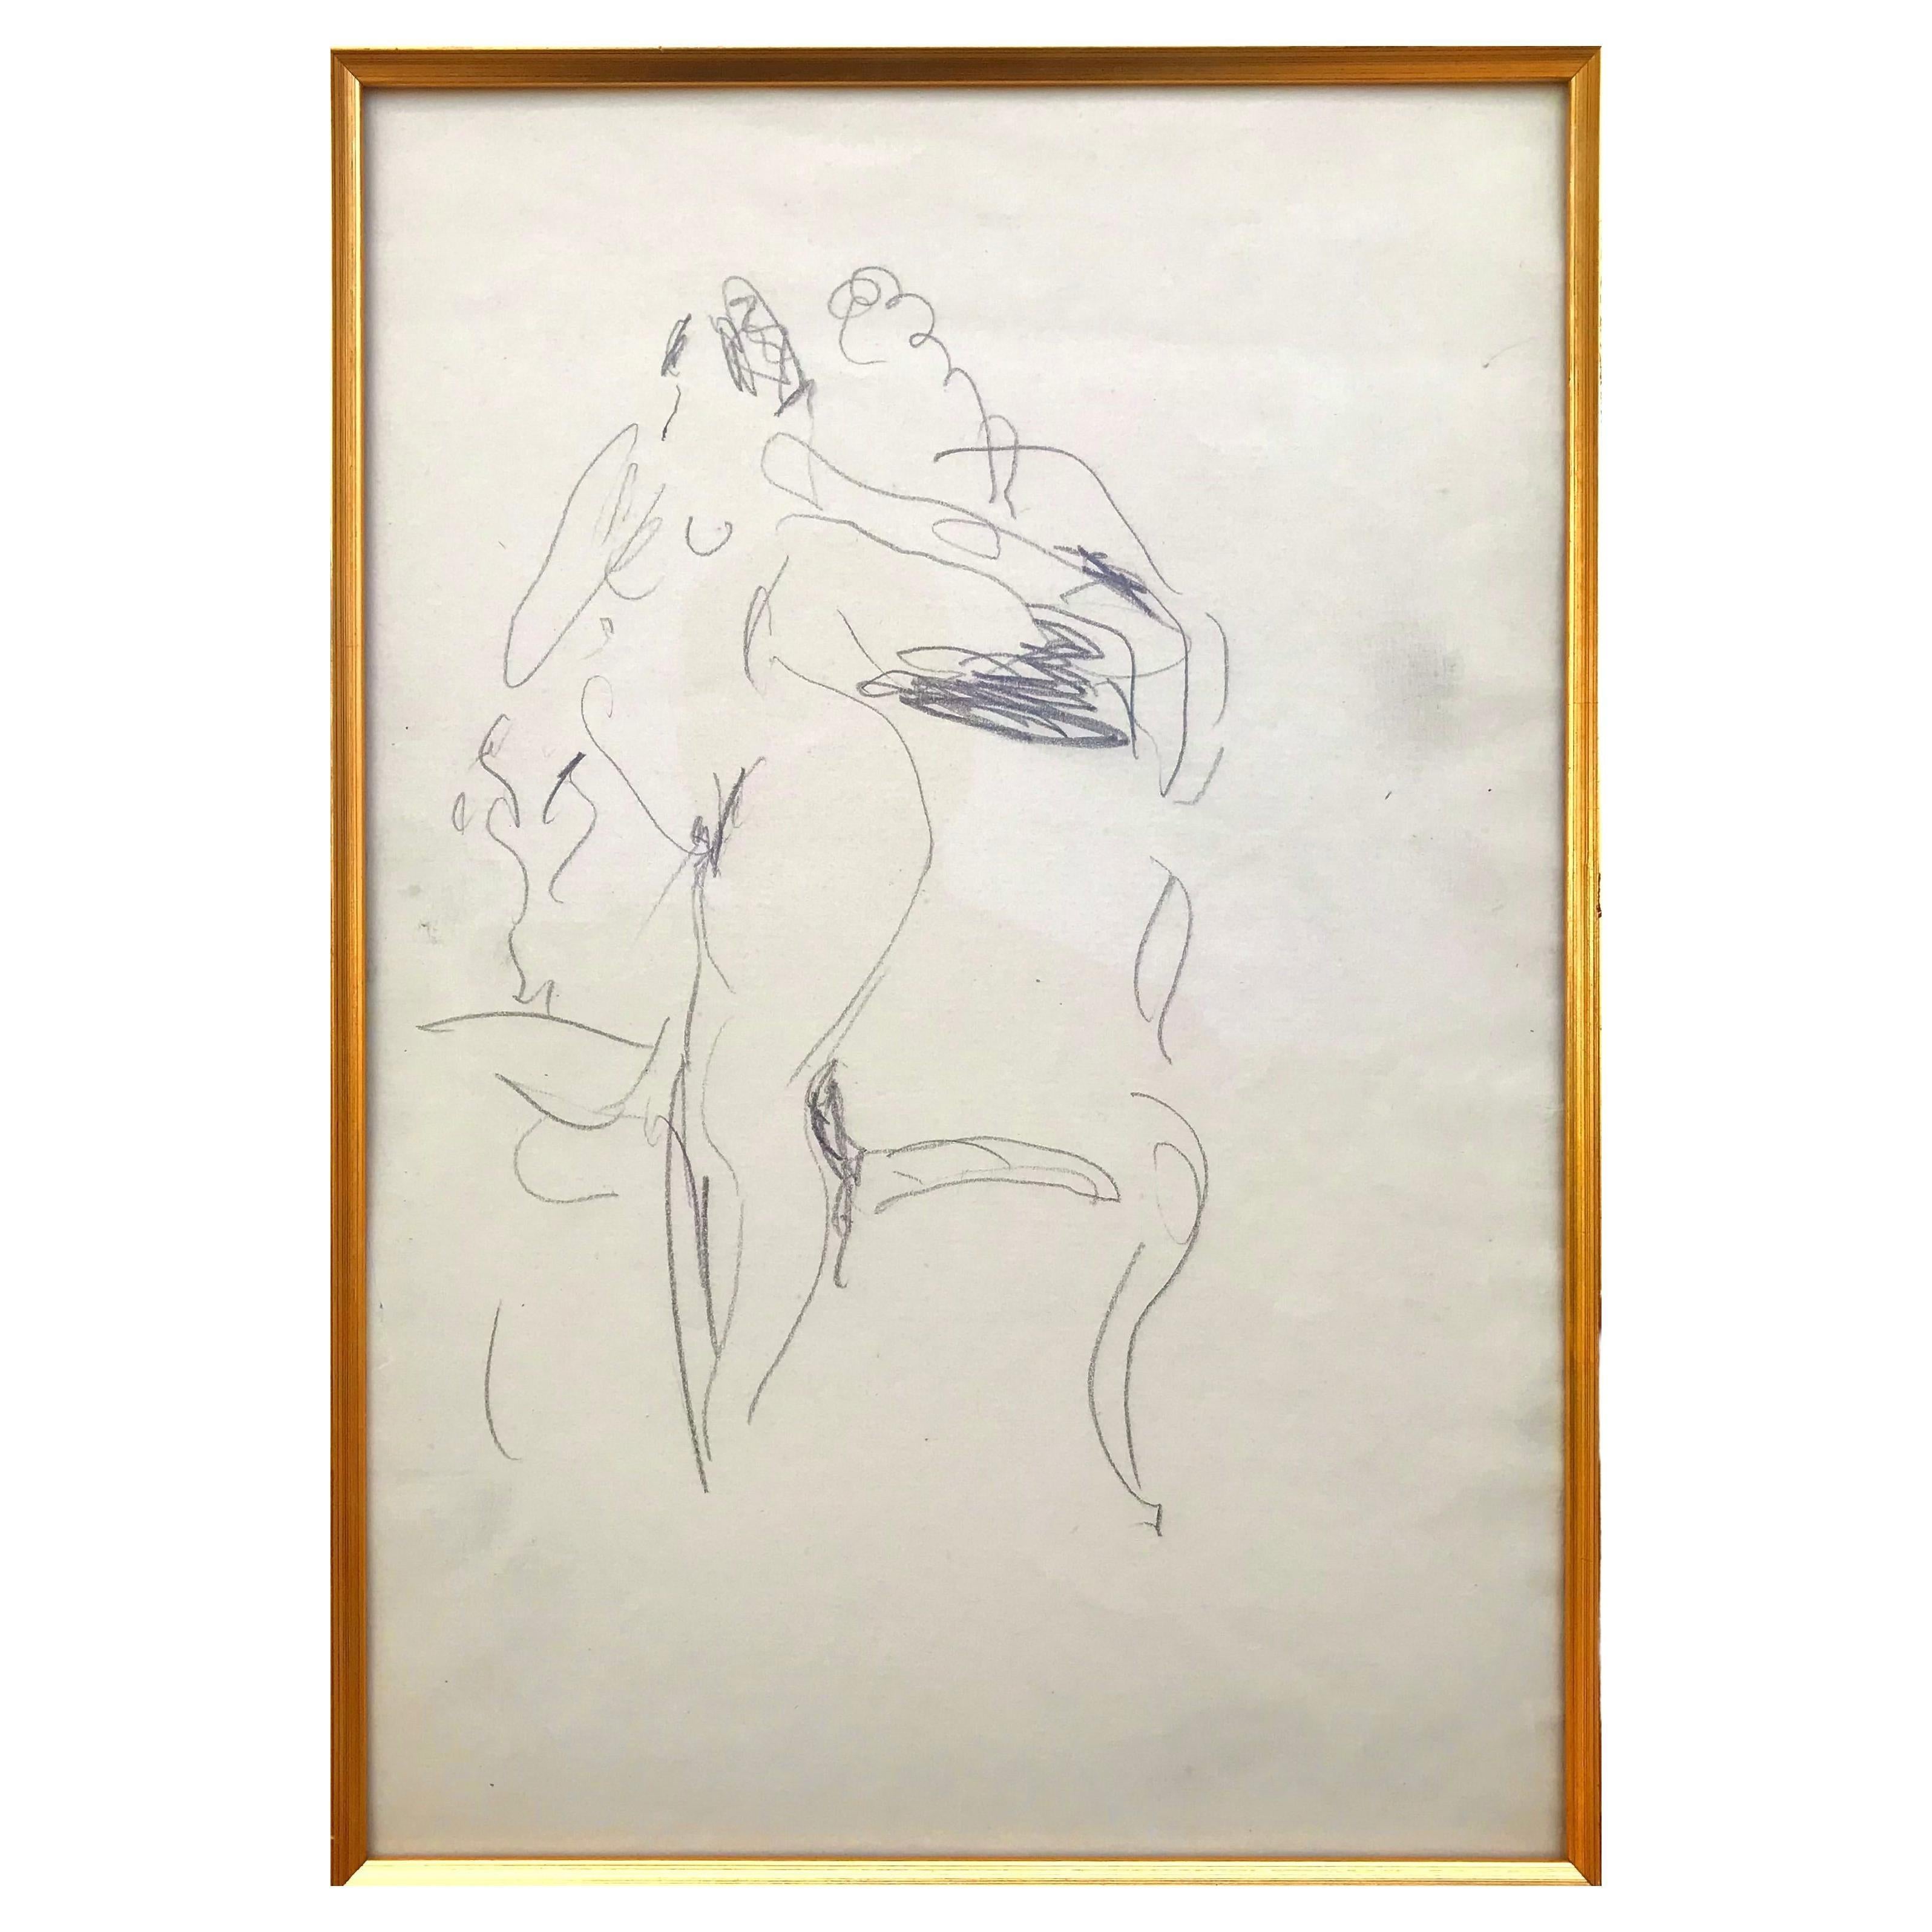 Henri Matisse Etude originale au crayon sur papier d'un nu debout près d'une chaise
Crayon sur papier 
Non signée.
Feuille : 8,85 x 13,75 pouces 
Encadré : 25.6 x 21.6 pouces

L'authenticité de cette œuvre a été confirmée par Georges Matisse. Un